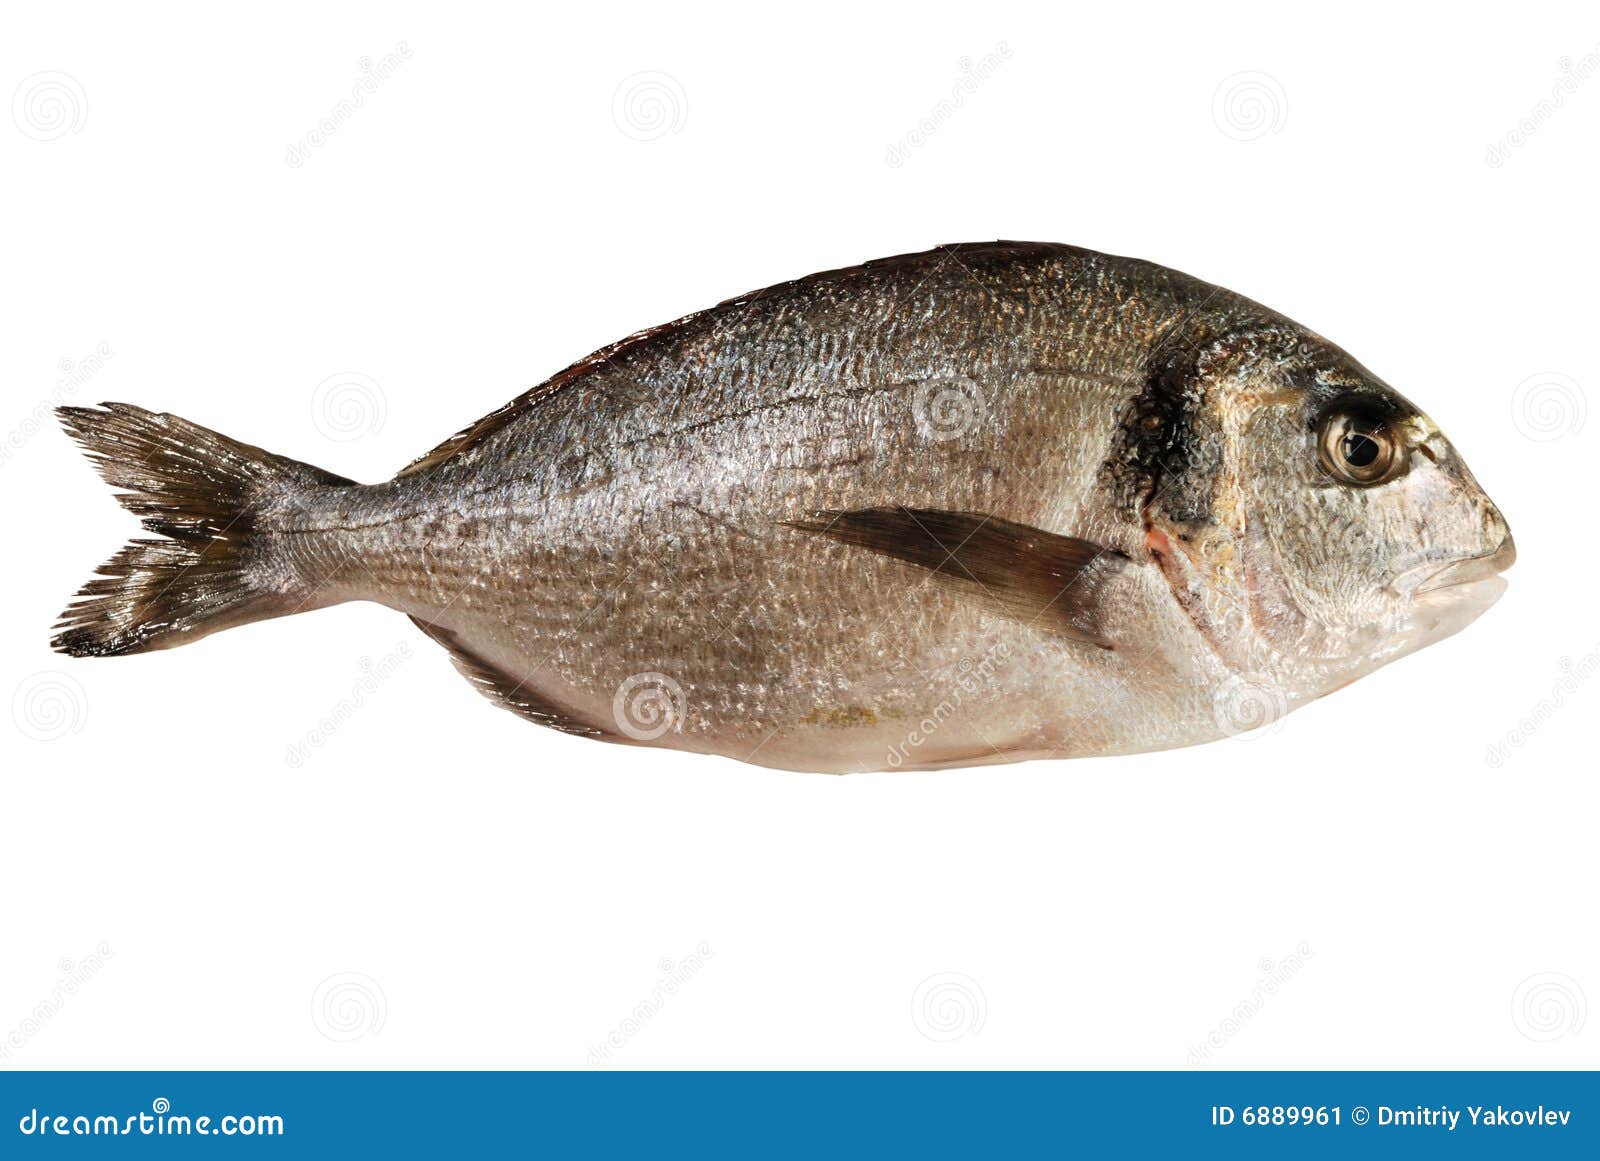 dorada fish ()